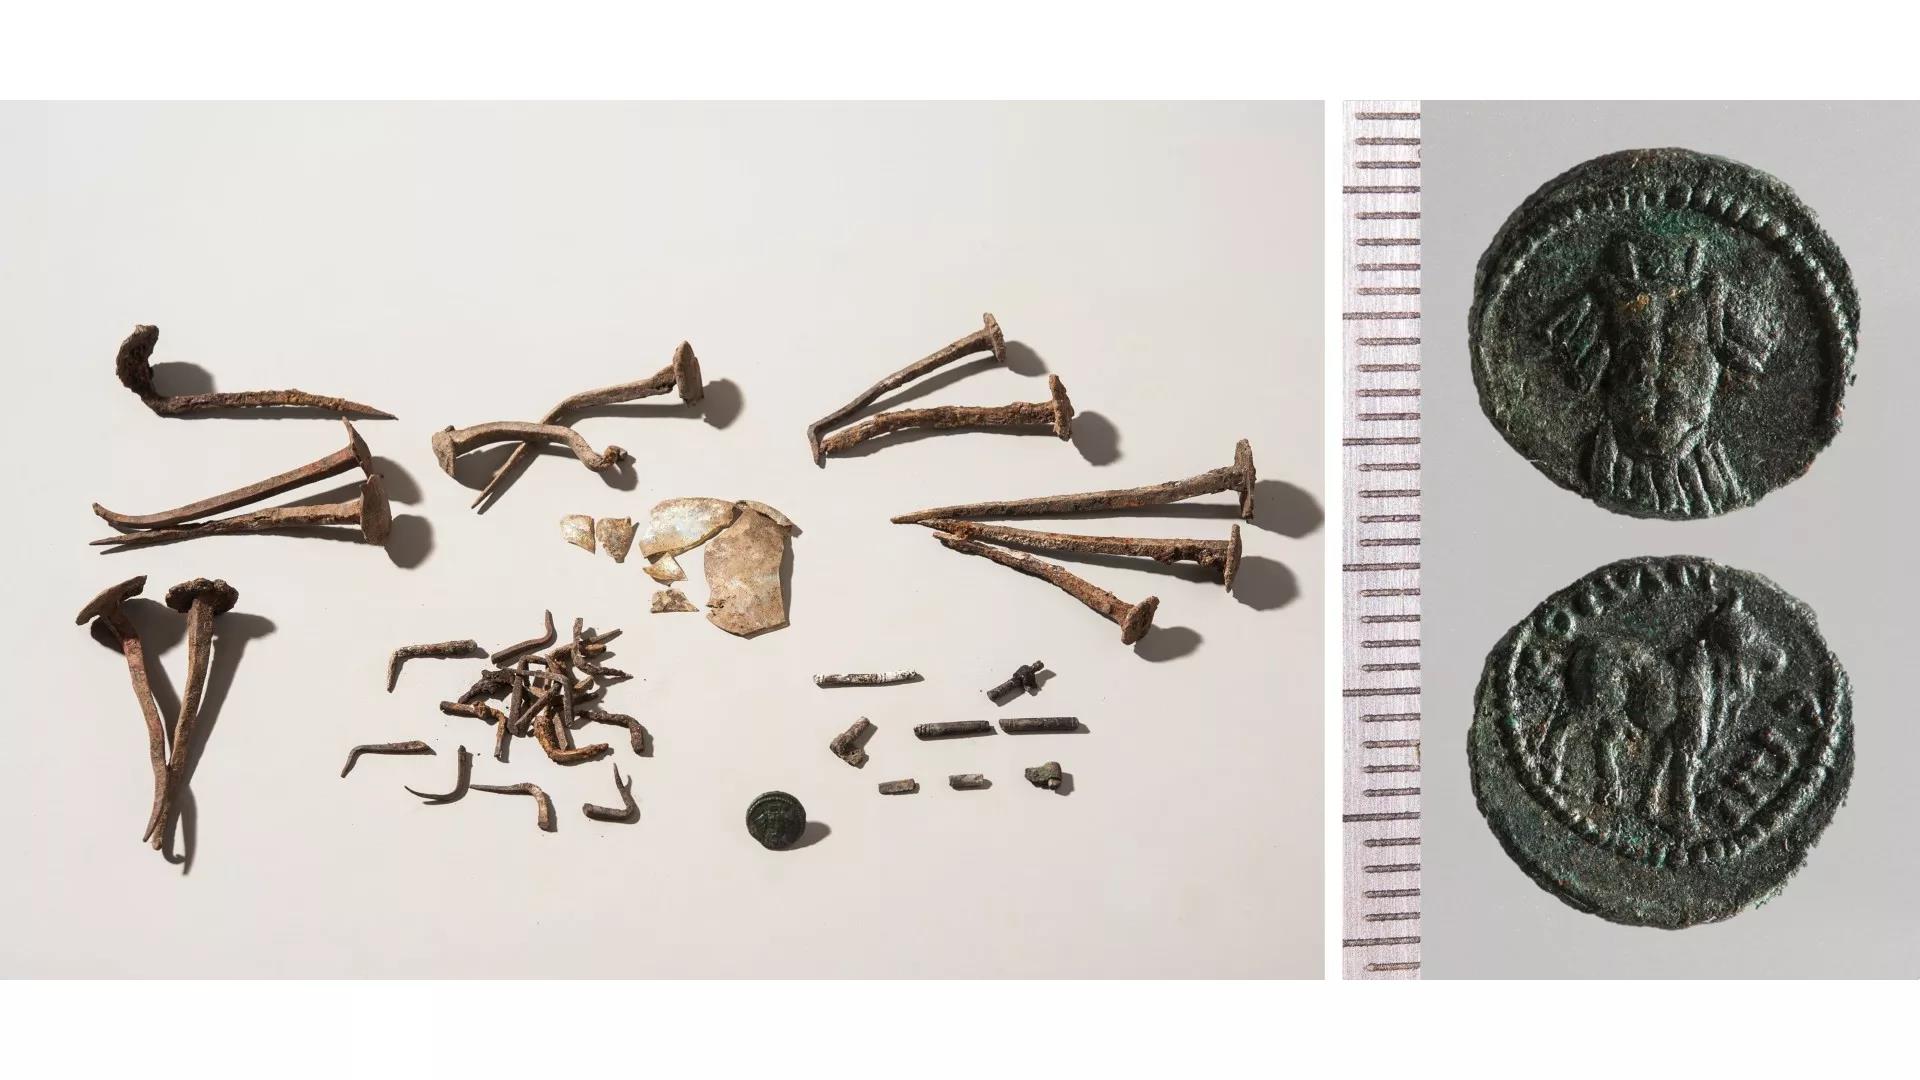 Thổ Nhĩ Kỳ: Bí ẩn người La Mã 2.000 tuổi bị “trấn yểm” bằng 3 vật lạ - Ảnh 2.